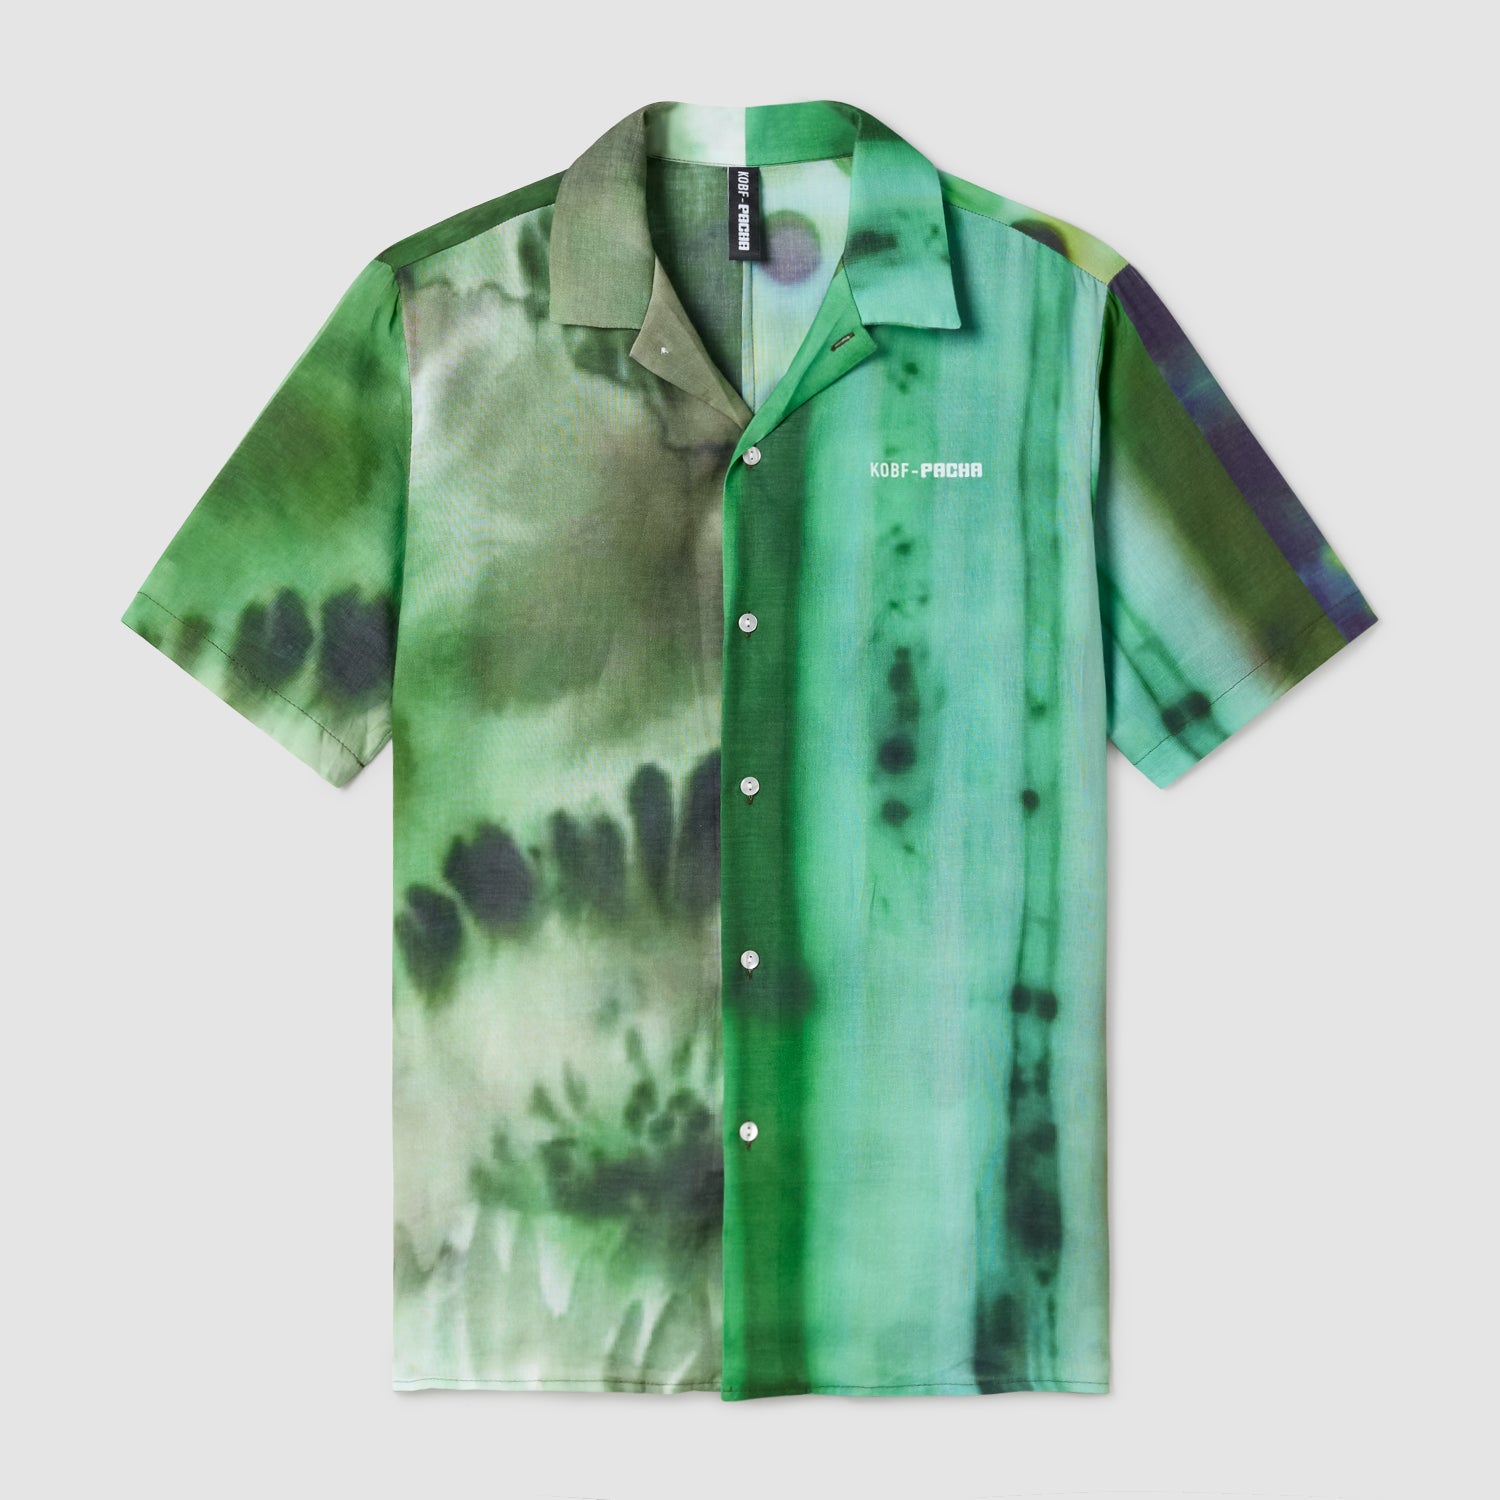 Pacha x KOBF - Camisa Unisex Verde